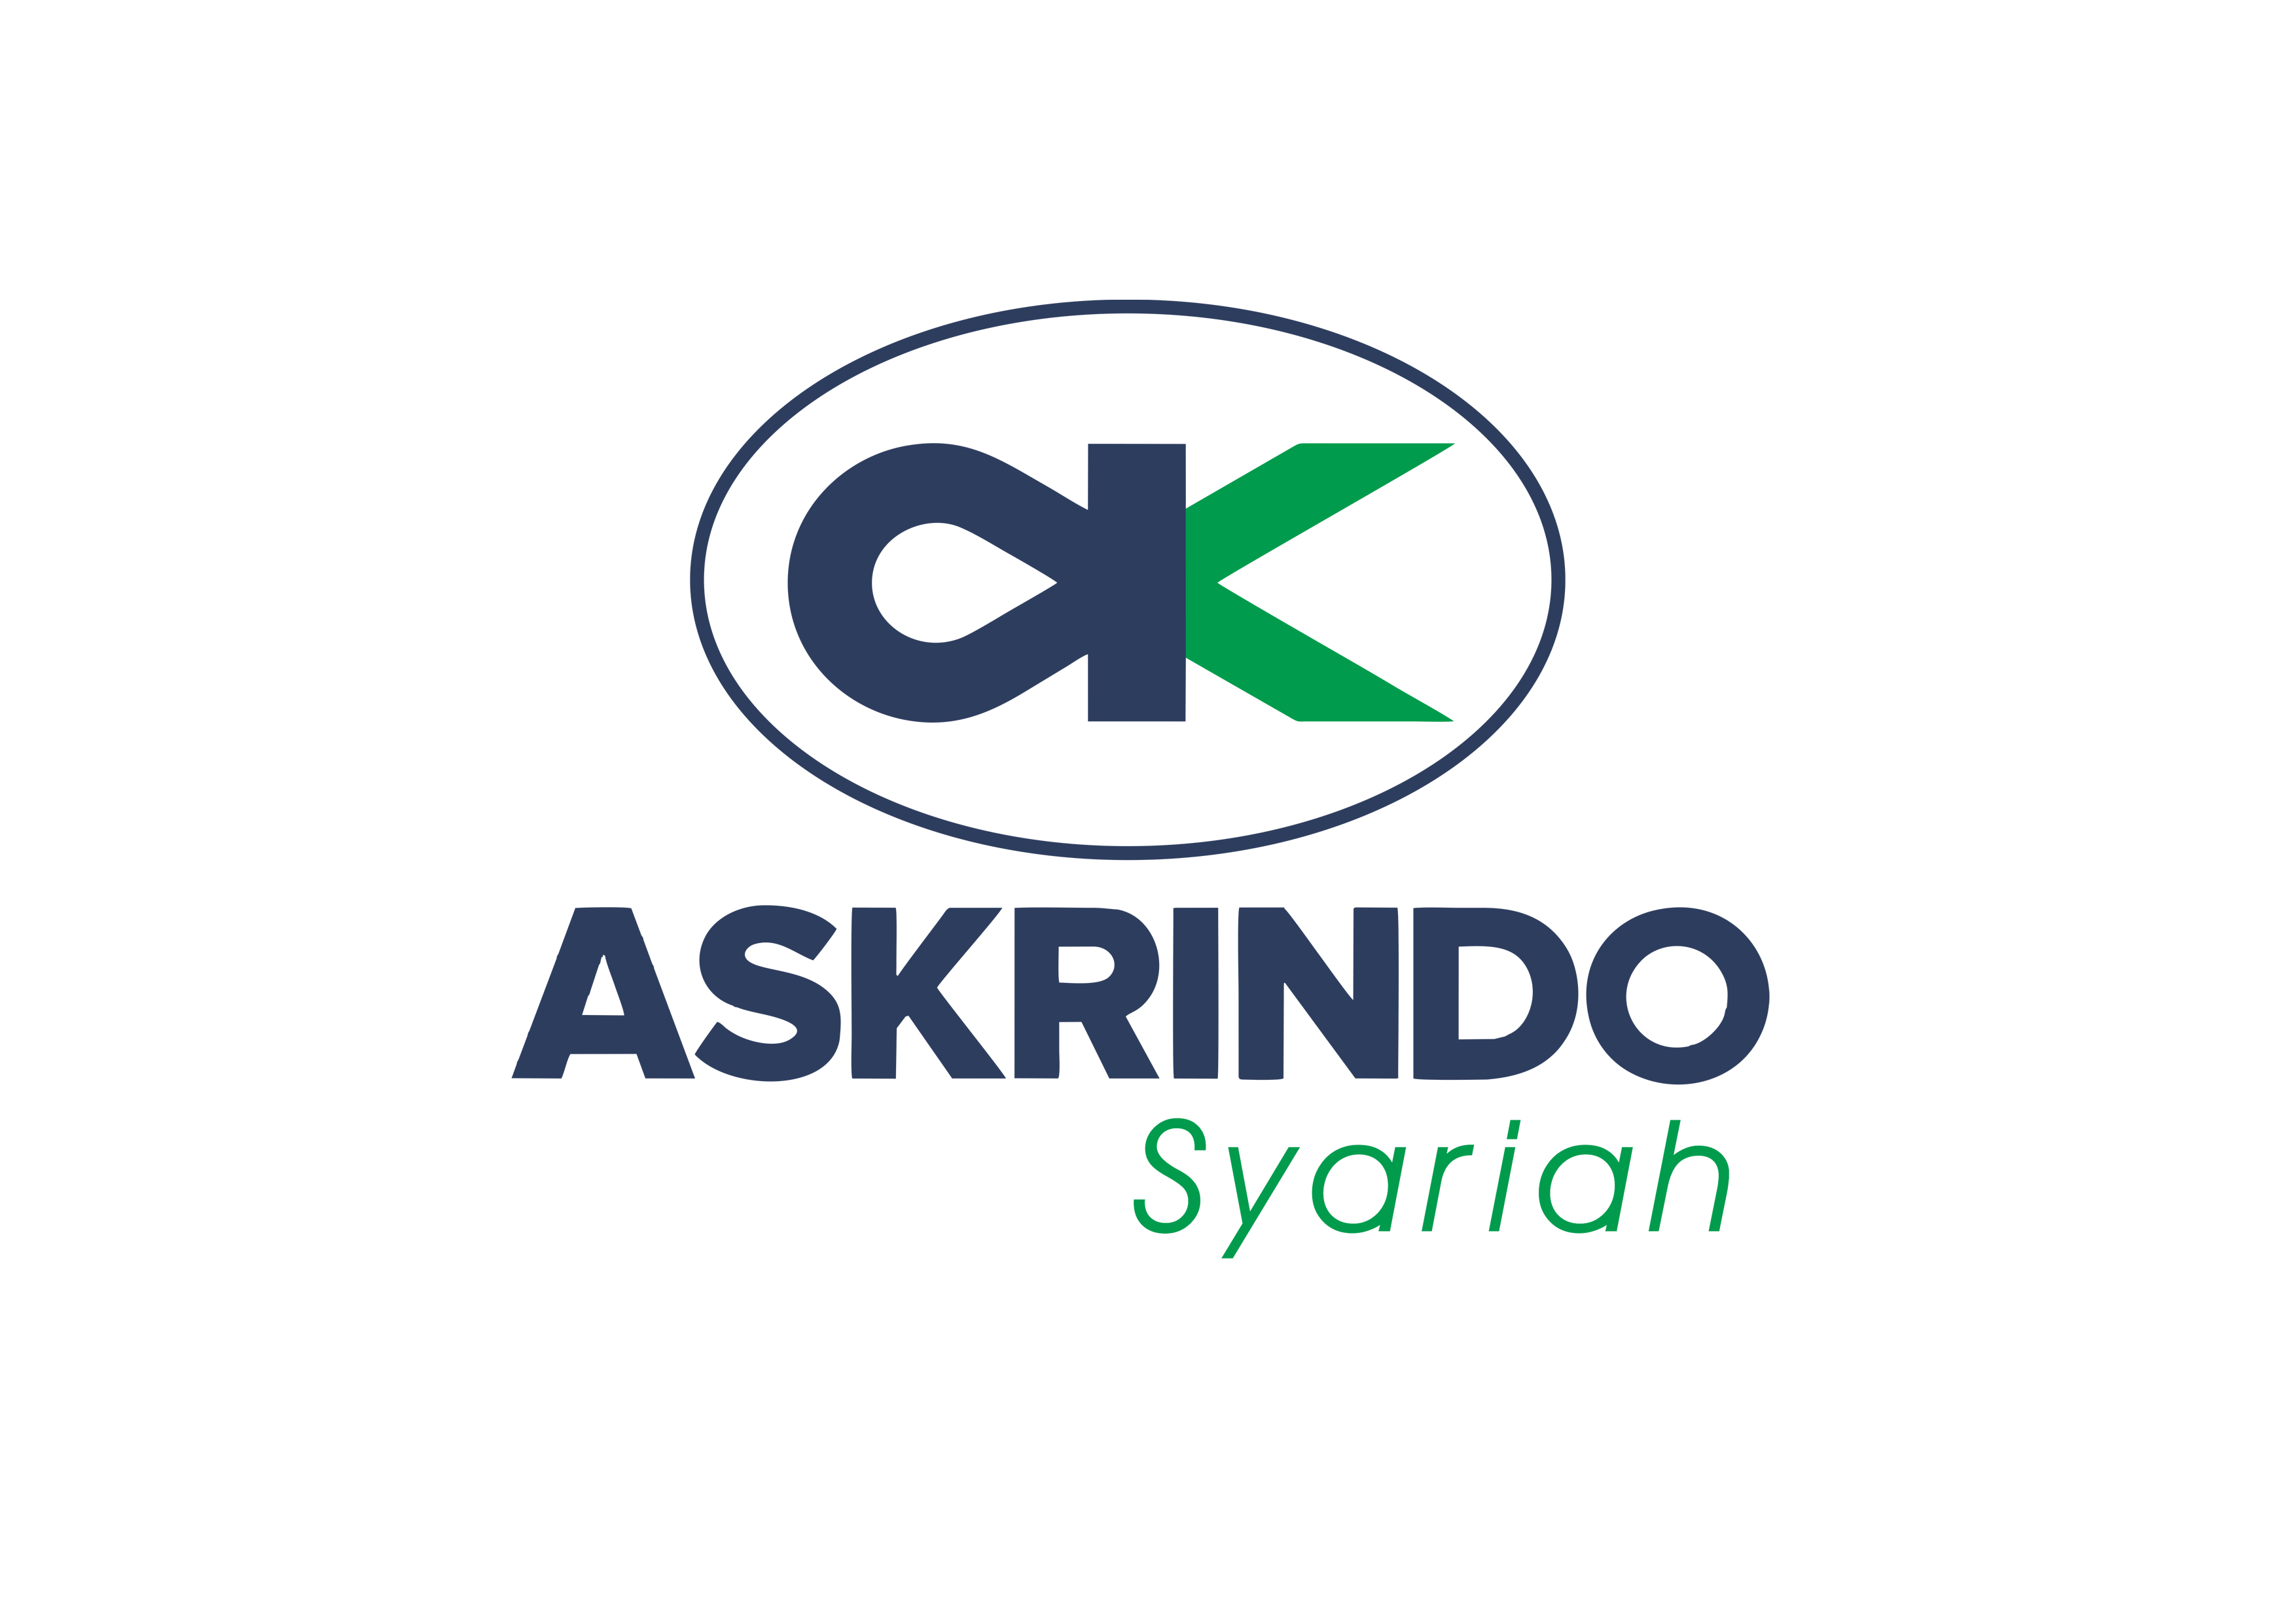 Employee Gathering Askrindo Syariah 2019 Part 1